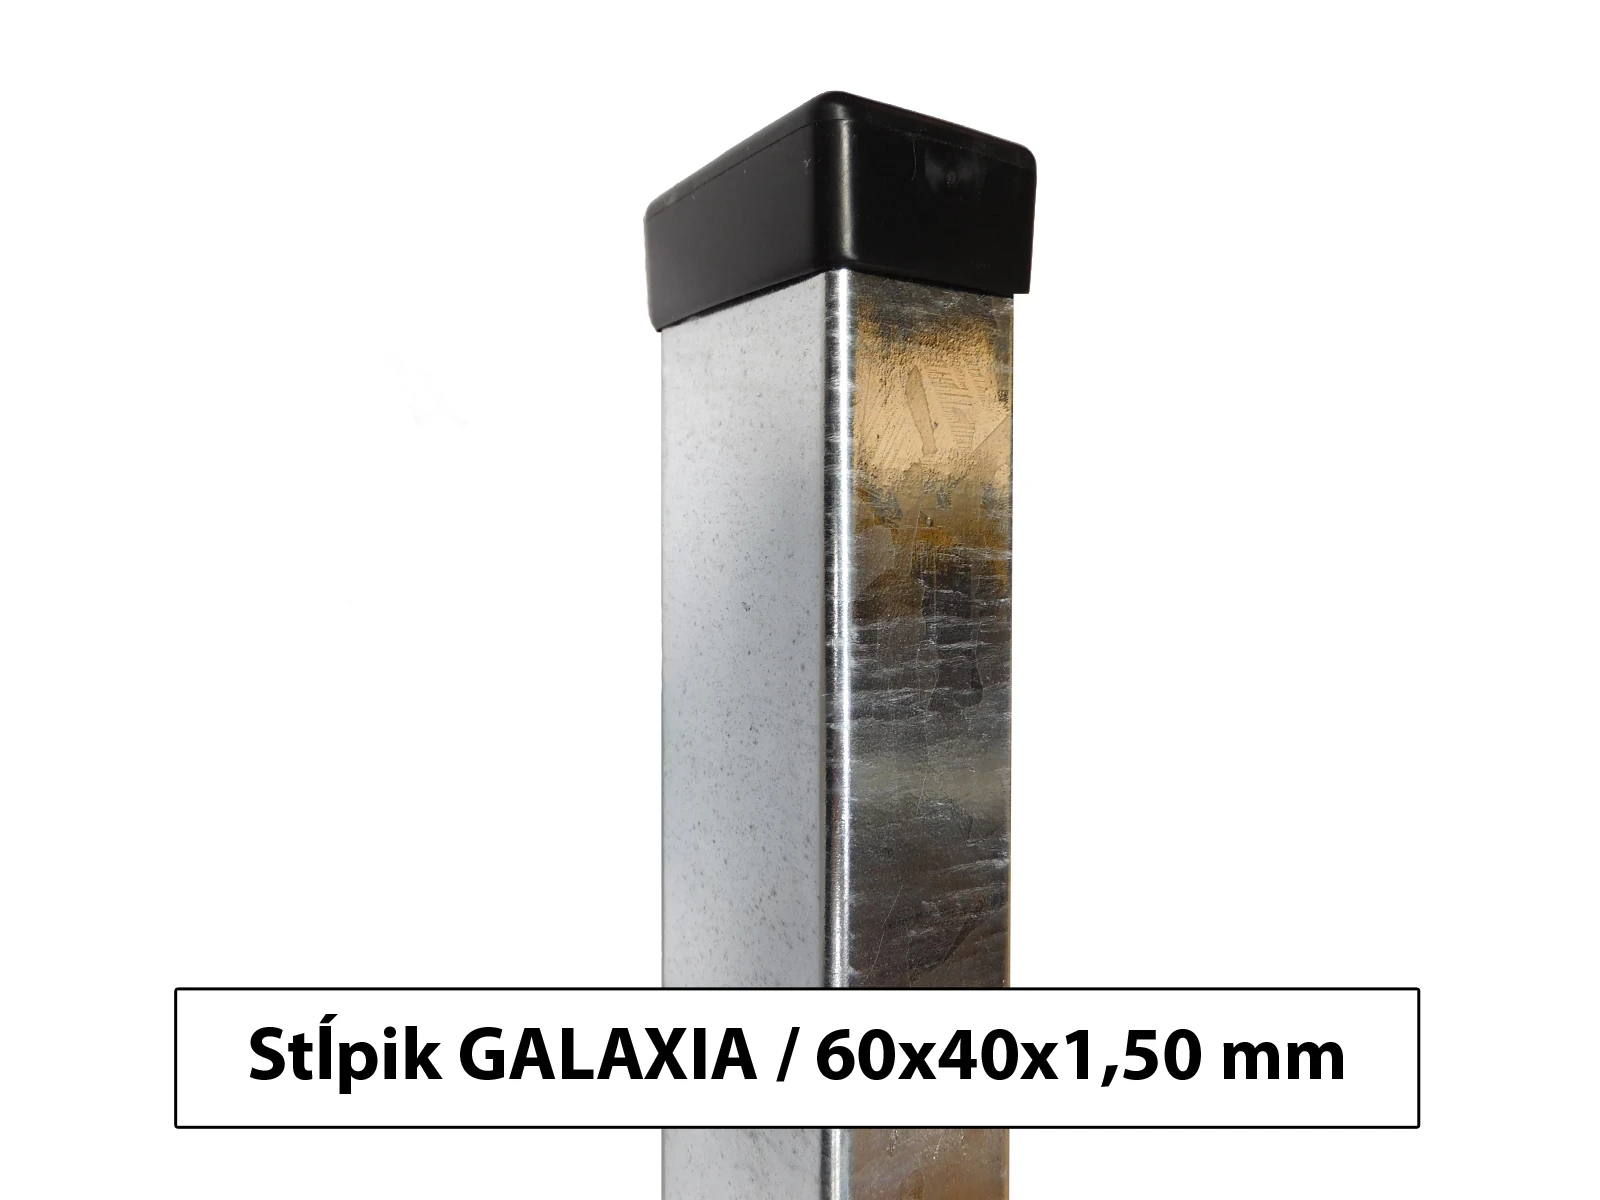 stlpik_galaxia_hnz_(005)_(1600x1200)